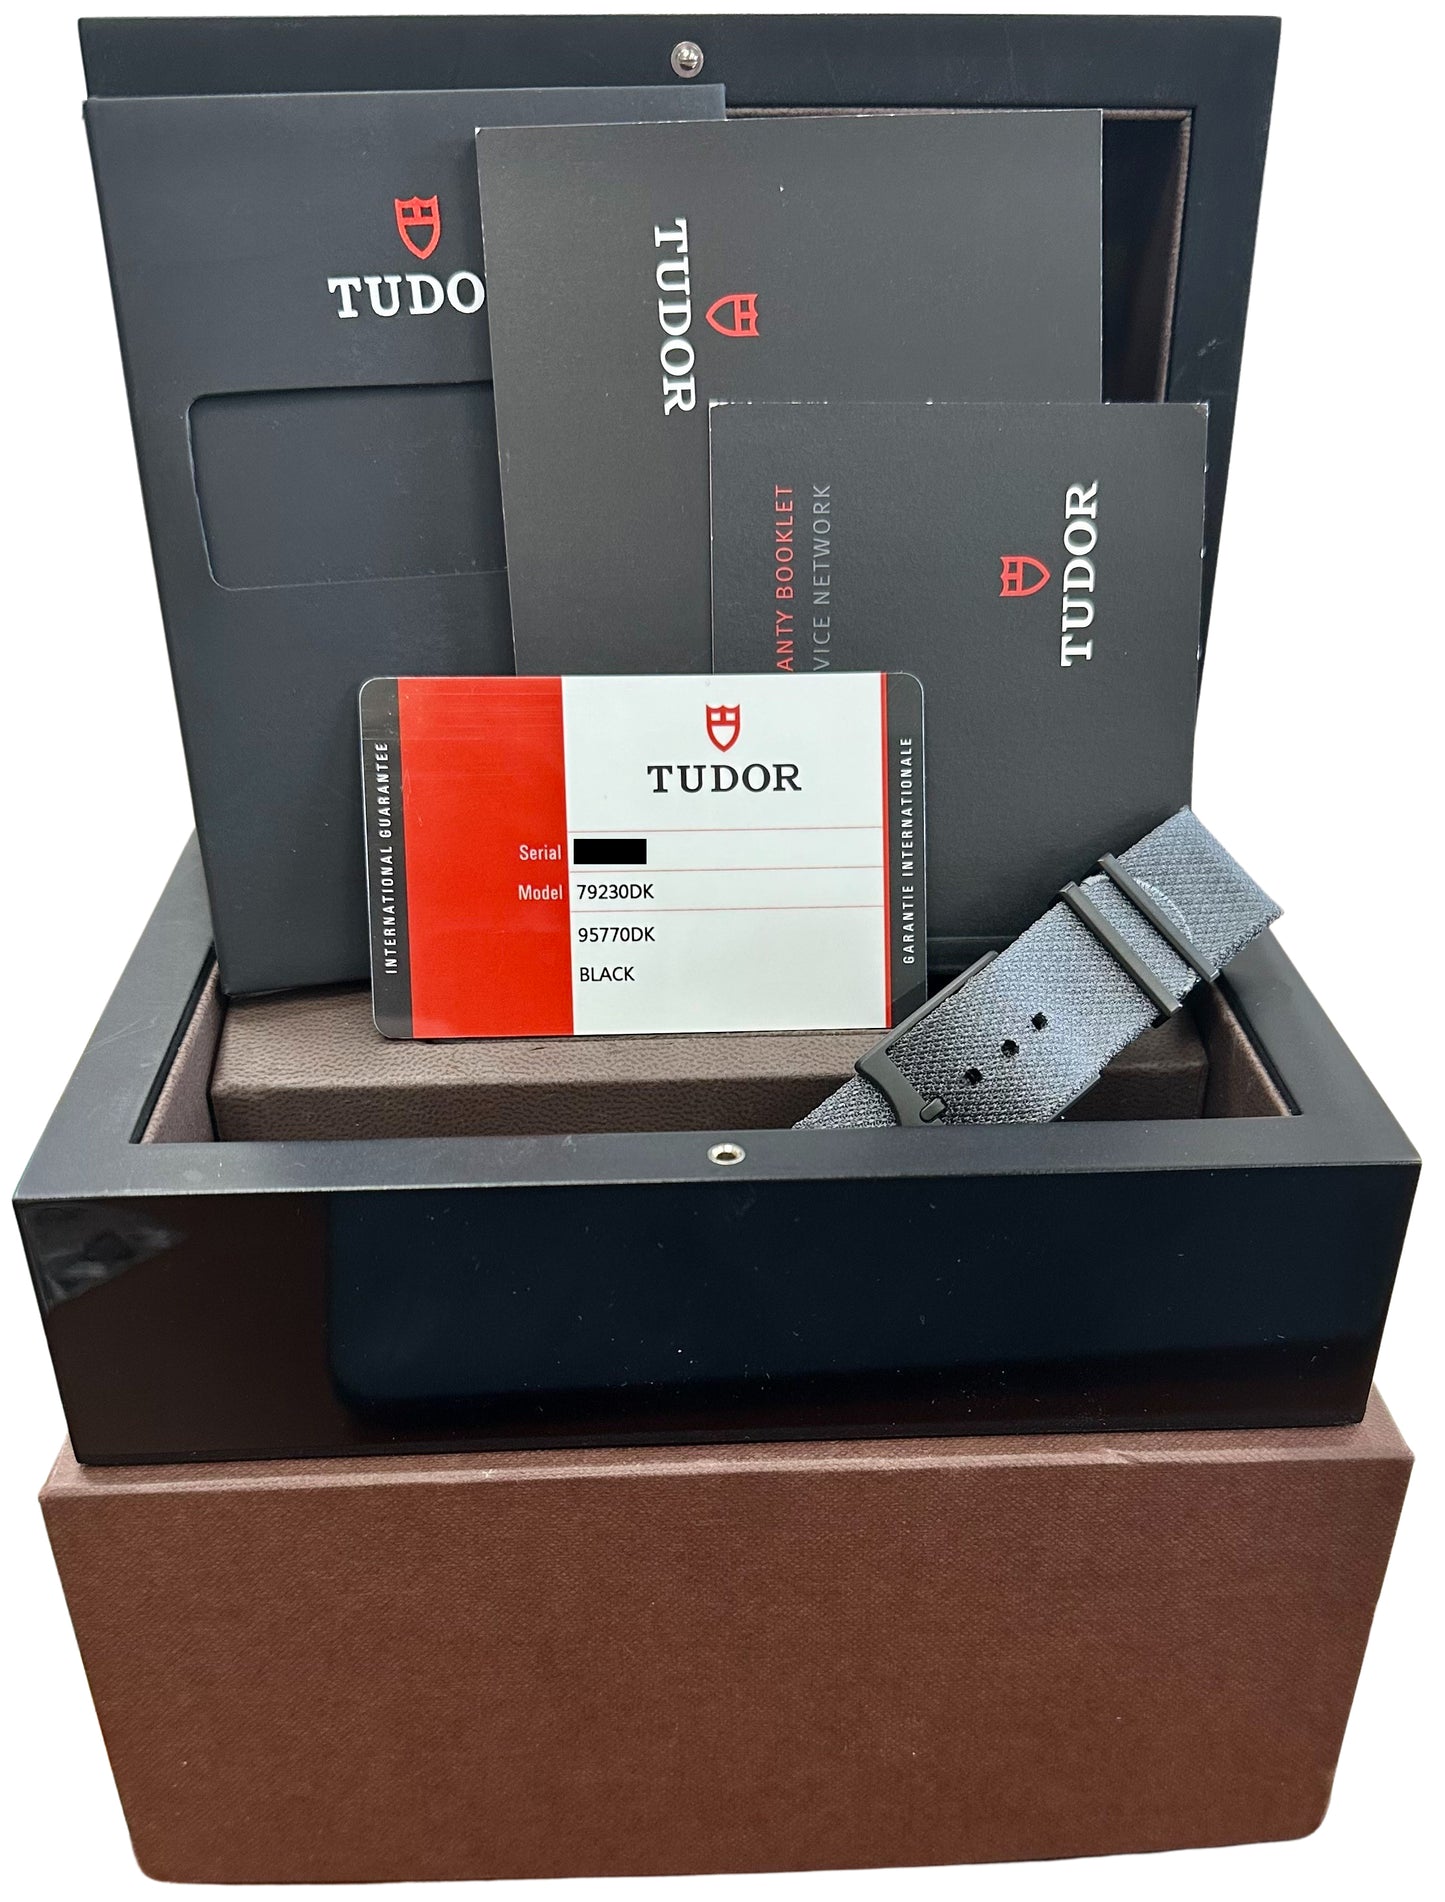 Tudor Black Bay Heritage Dark PAPERS Stainless Steel PVD 41mm Watch 79230 DK B+P